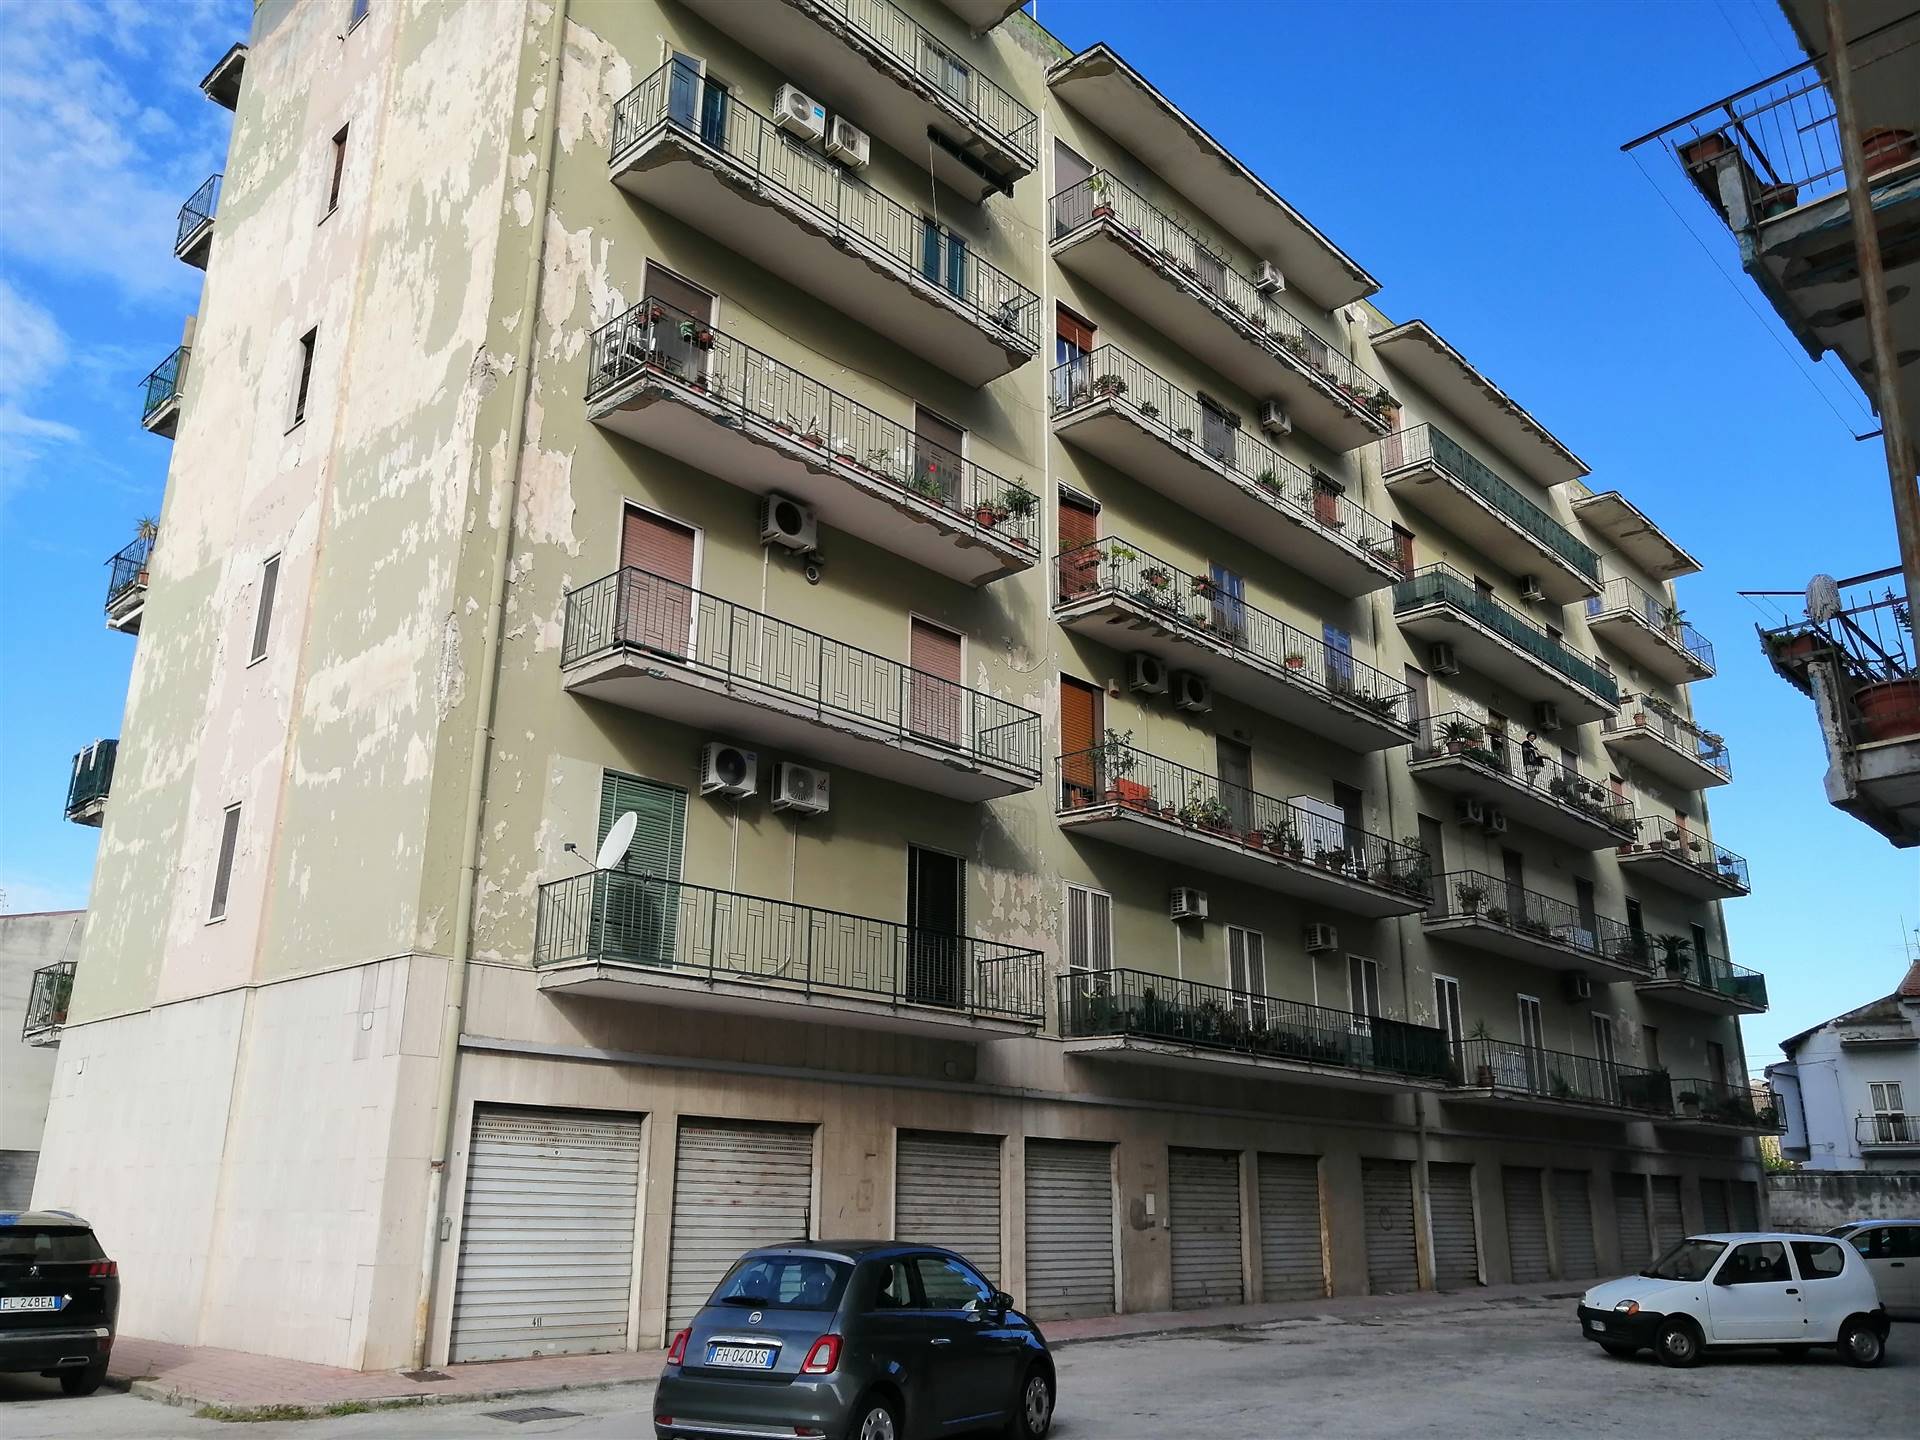 Appartamento in vendita a Santa Maria Capua Vetere, 3 locali, prezzo € 95.000 | PortaleAgenzieImmobiliari.it